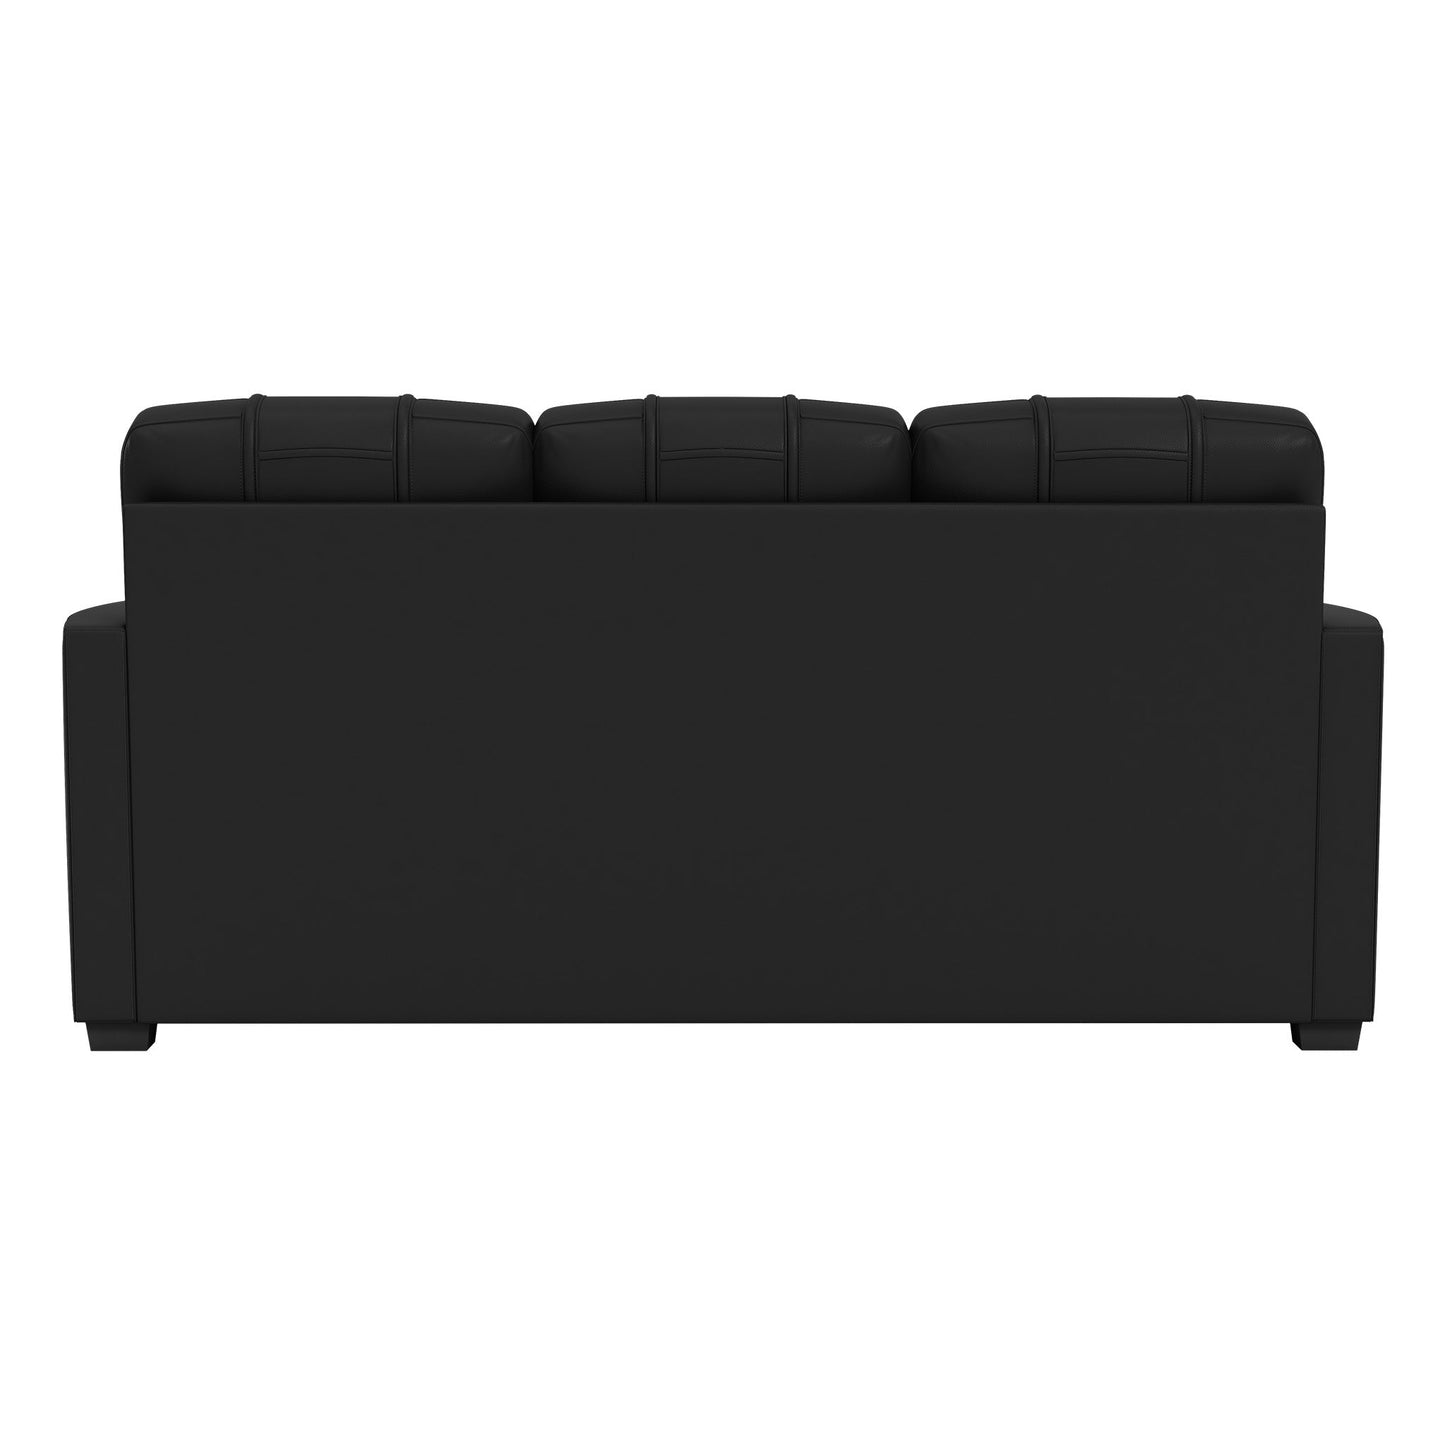 Silver Sofa with Brooklyn Nets Logo